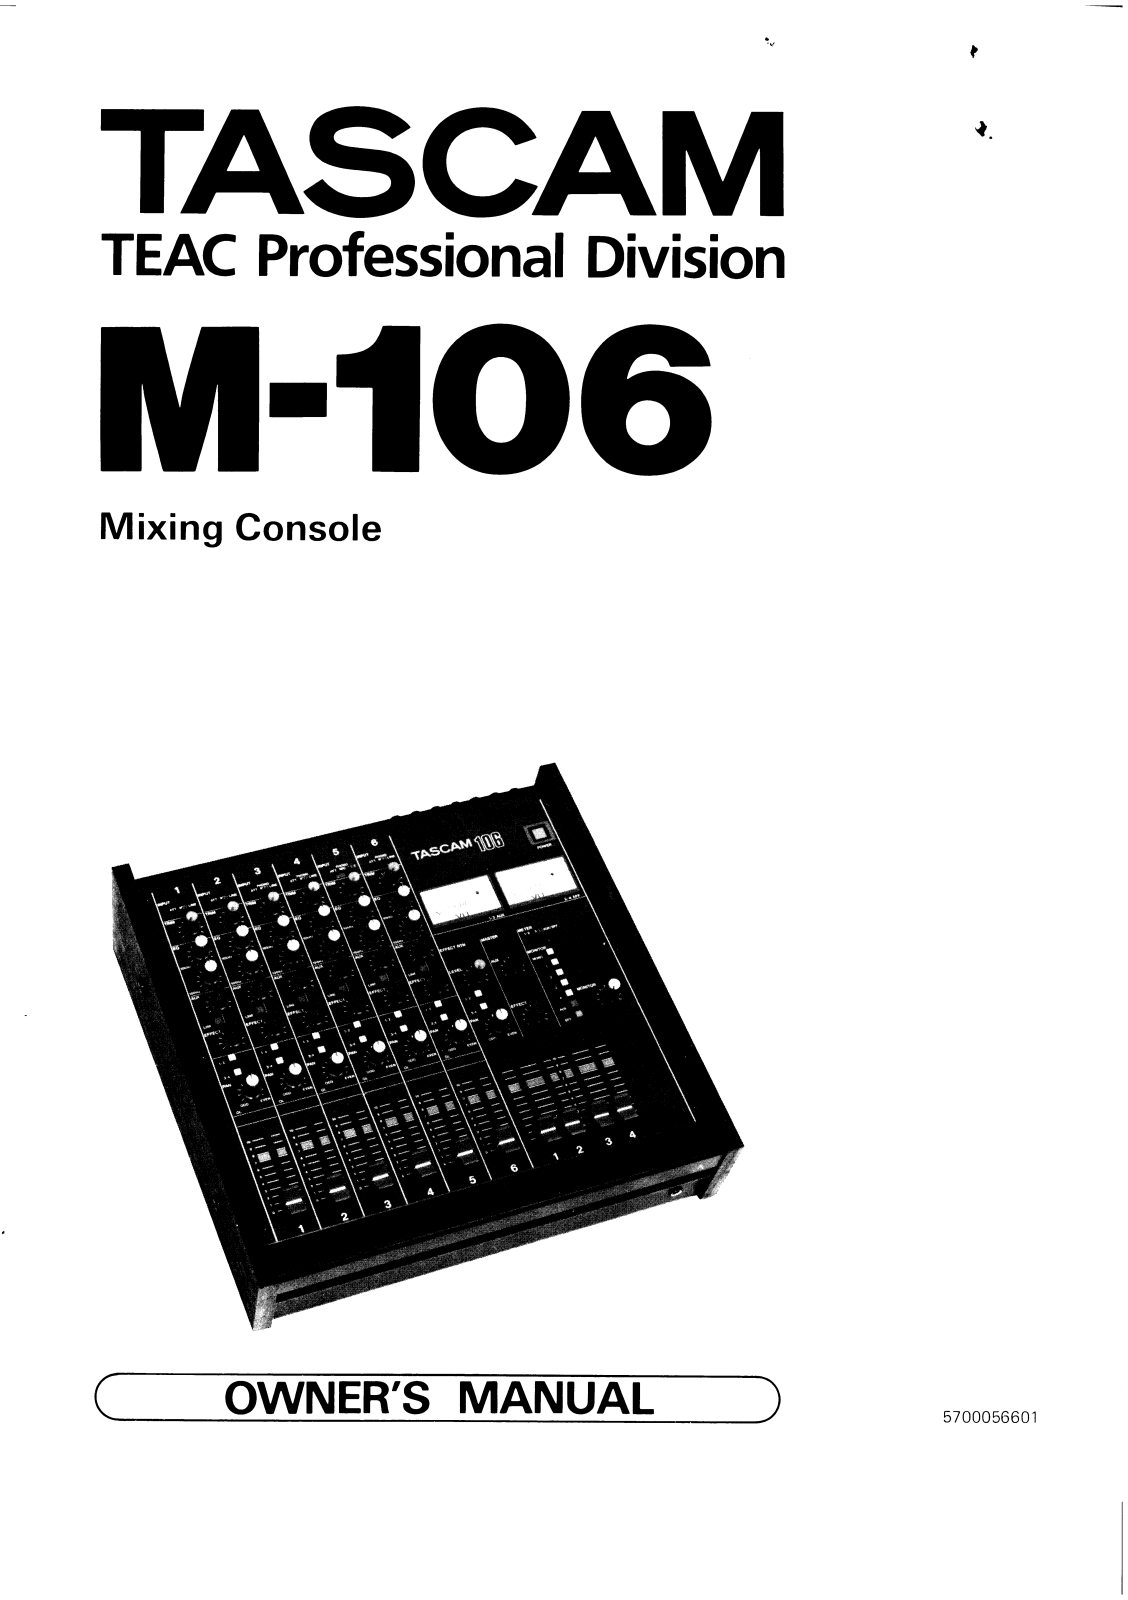 Tascam M-106 Manual